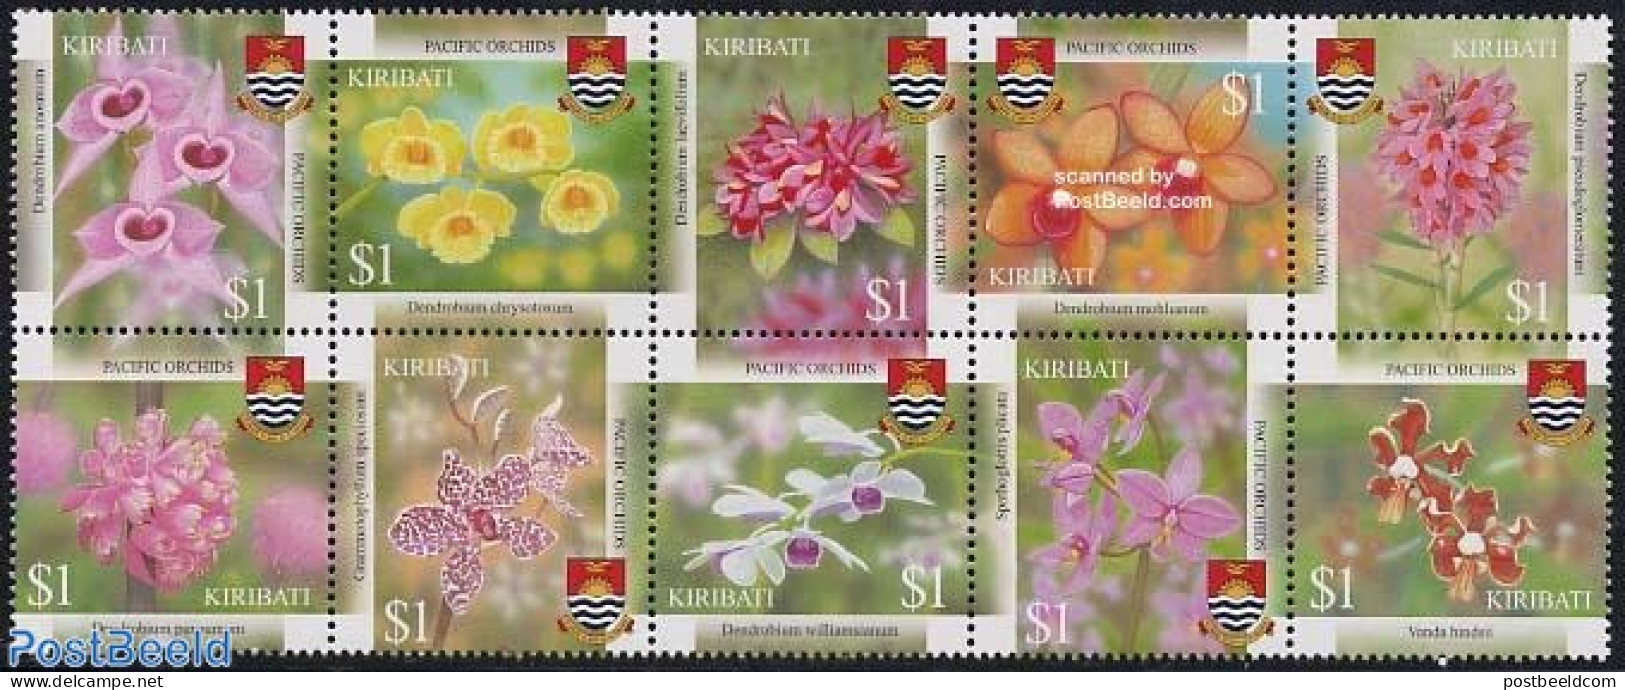 Kiribati 2004 Pacific Orchids 10v [++++], Mint NH, Nature - Flowers & Plants - Orchids - Kiribati (1979-...)